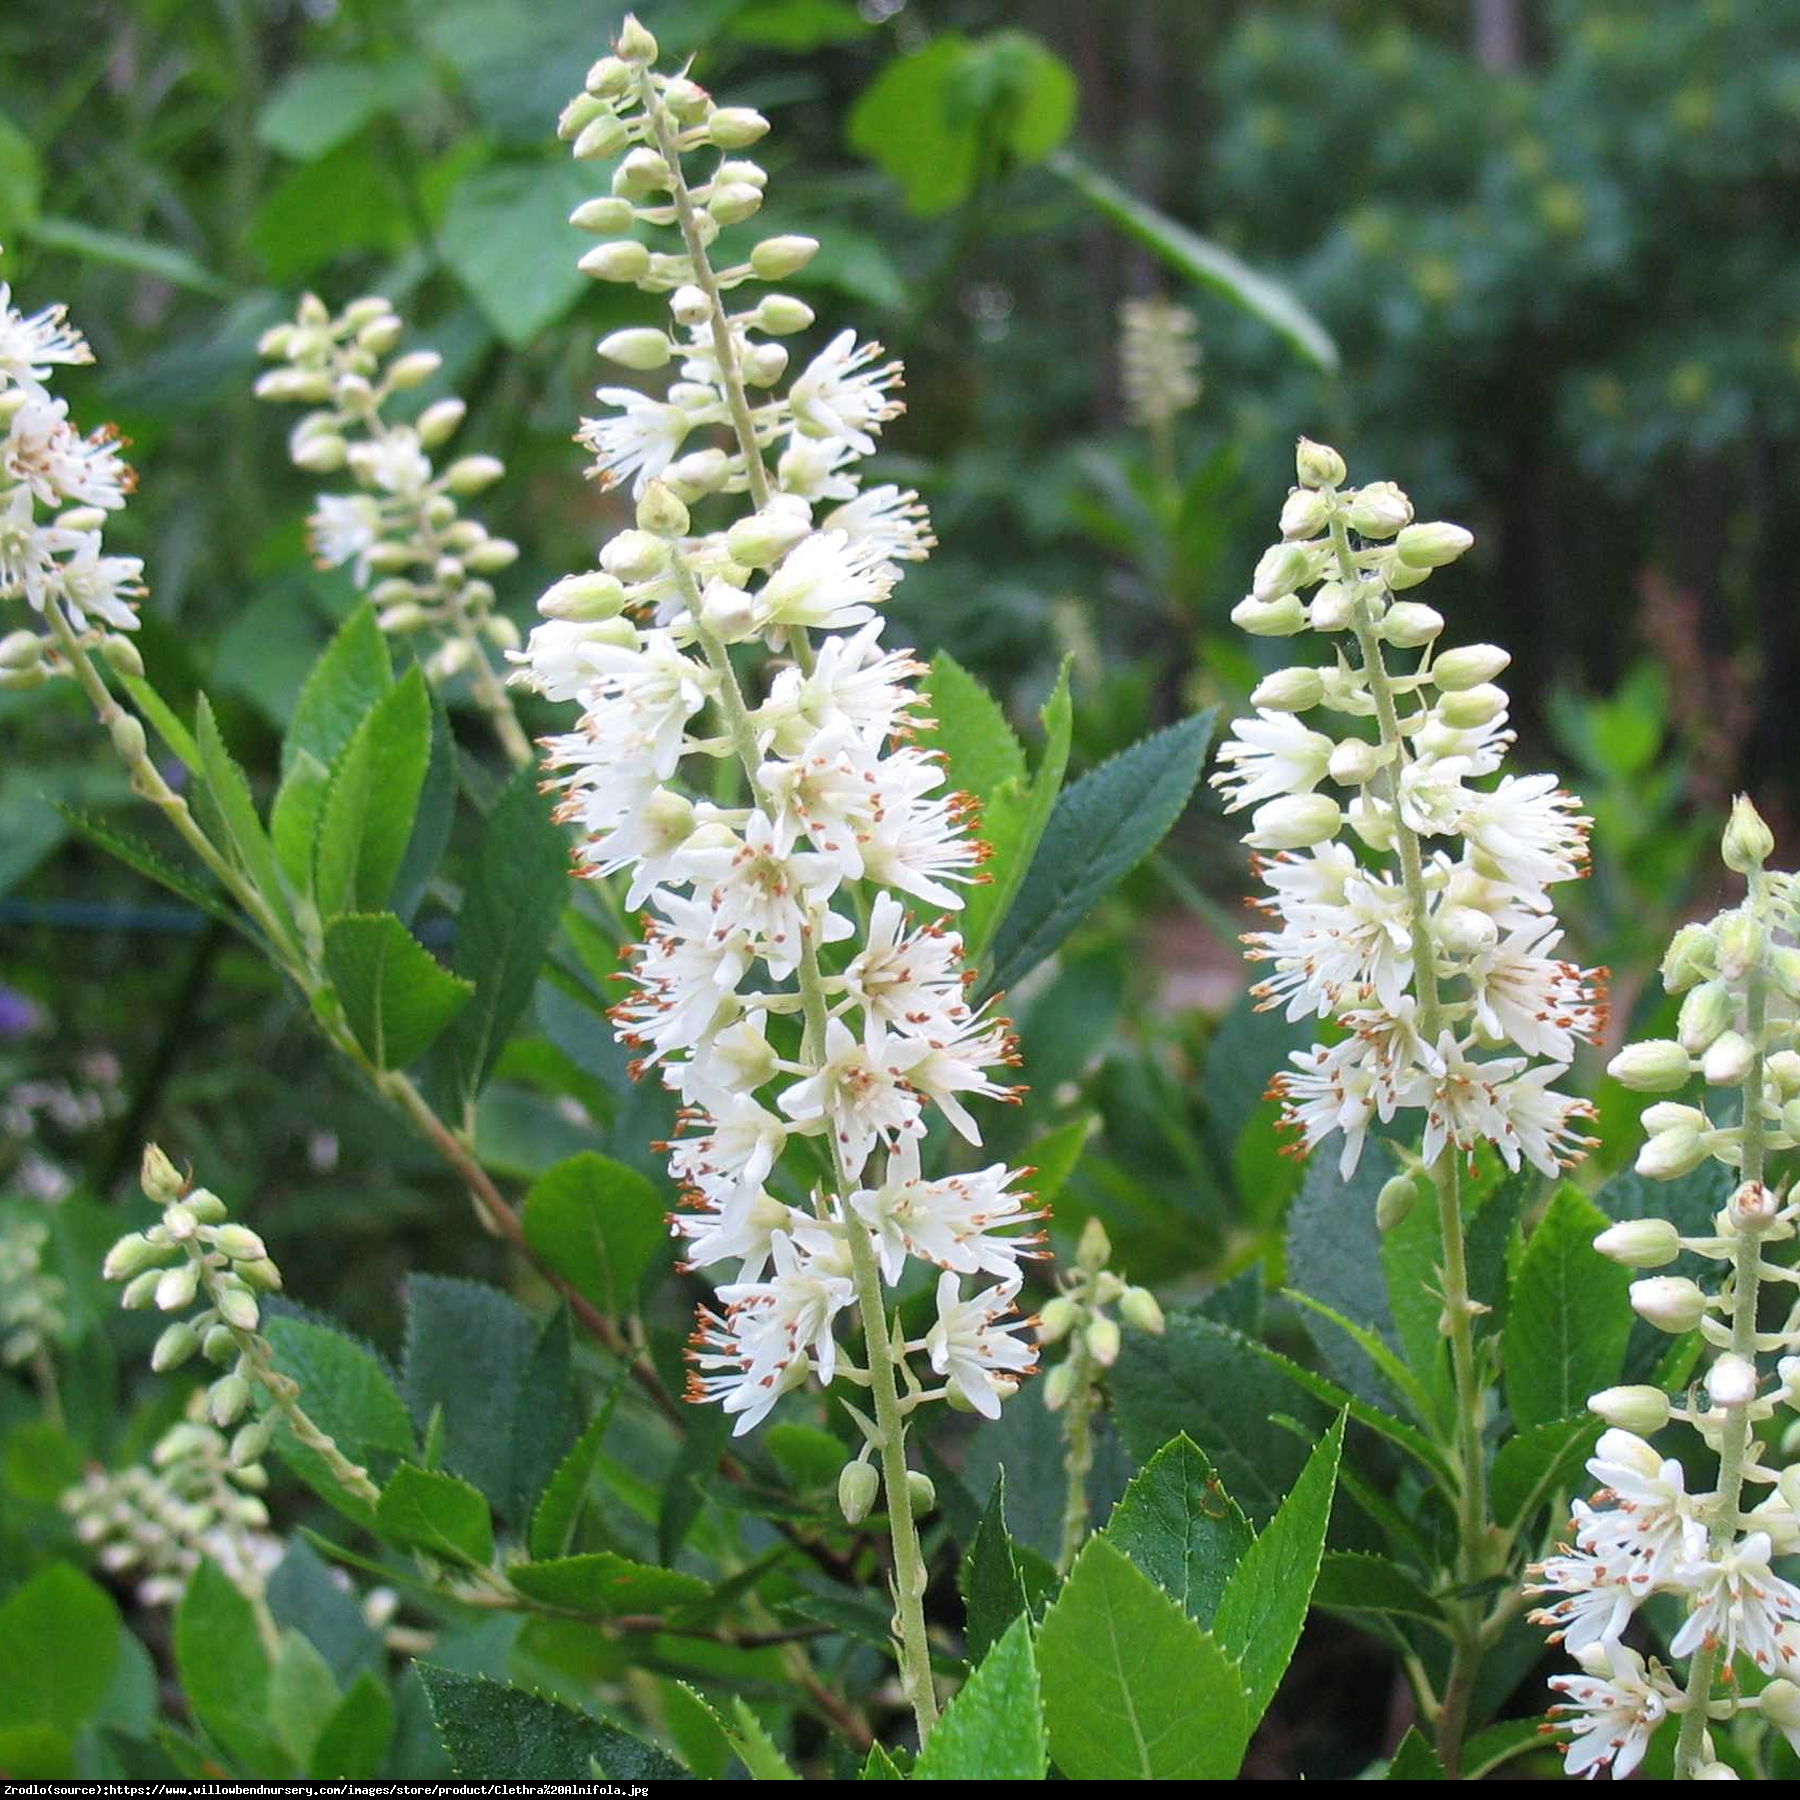 Orszelina Biała - Clethra alnifolia